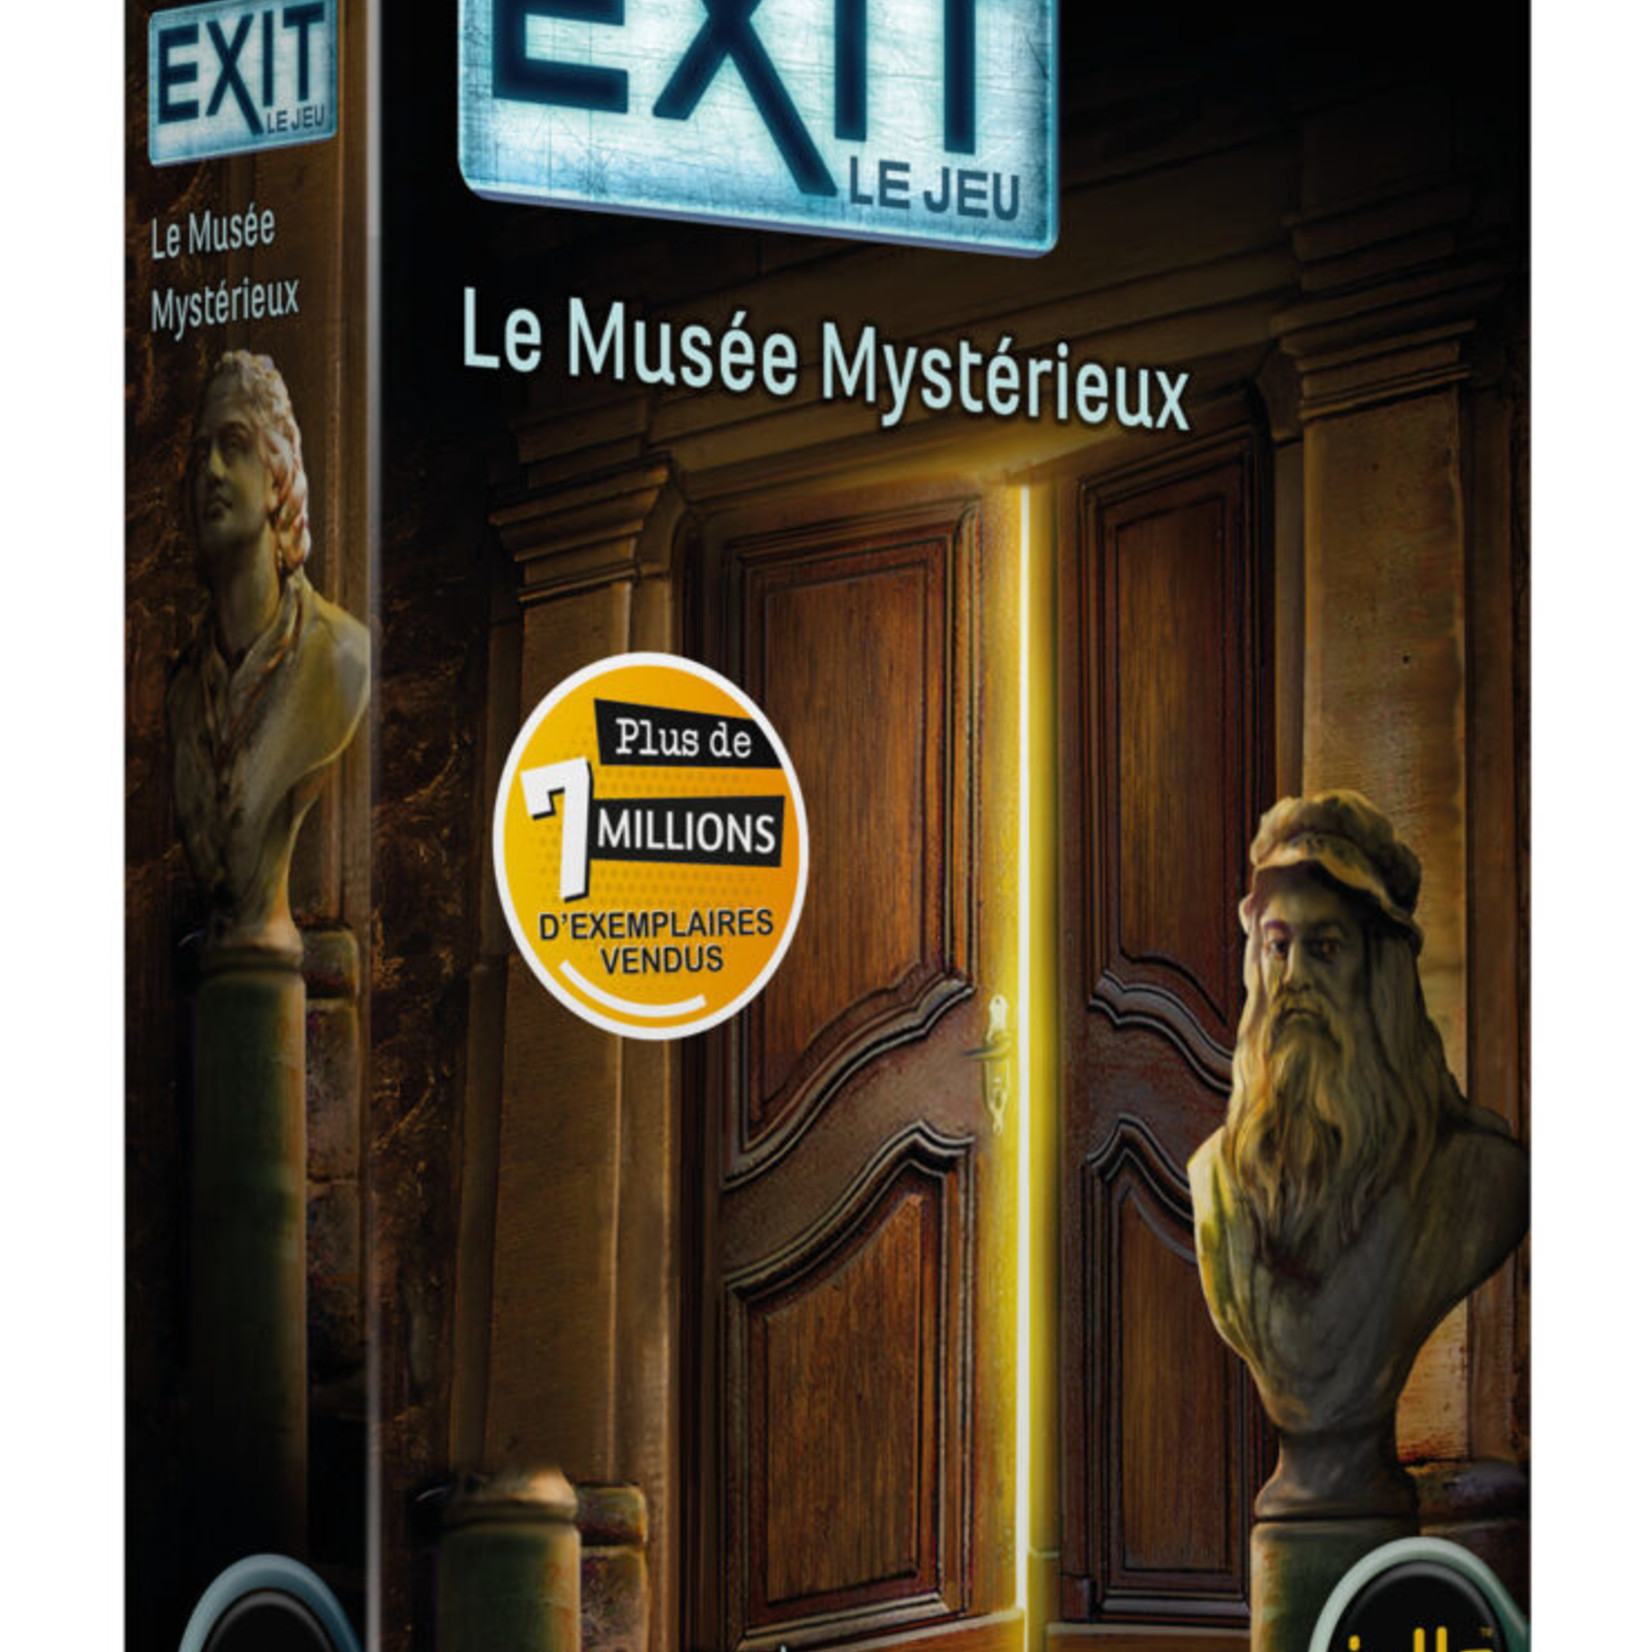 IELLO Exit - Le Musée Mystérieux